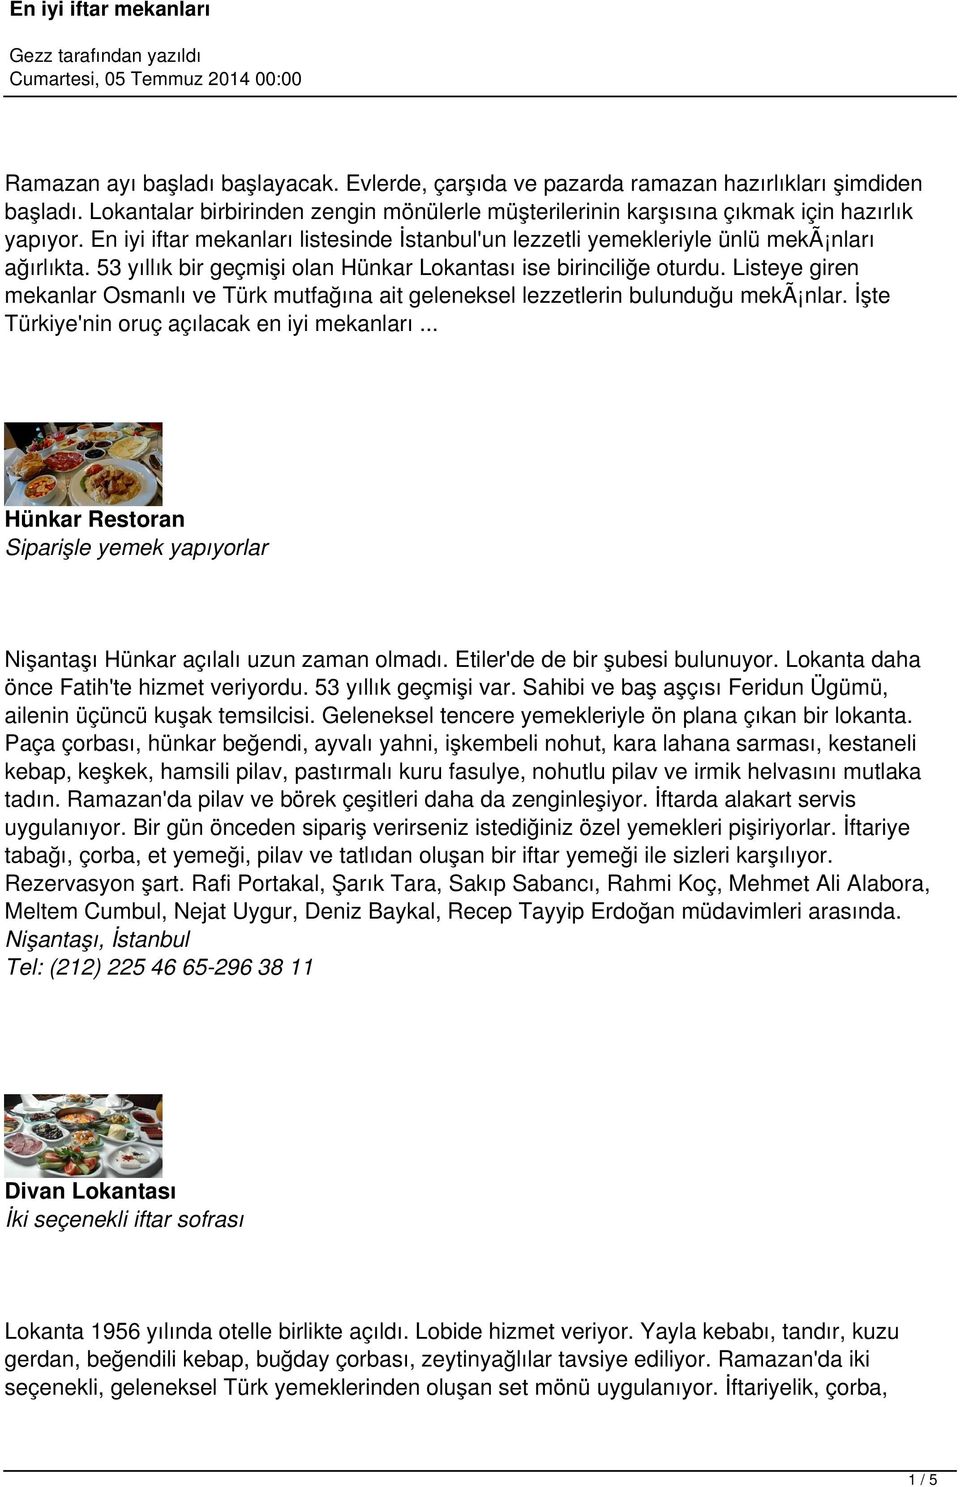 Listeye giren mekanlar Osmanlı ve Türk mutfağına ait geleneksel lezzetlerin bulunduğu mekã nlar. İşte Türkiye'nin oruç açılacak en iyi mekanları.